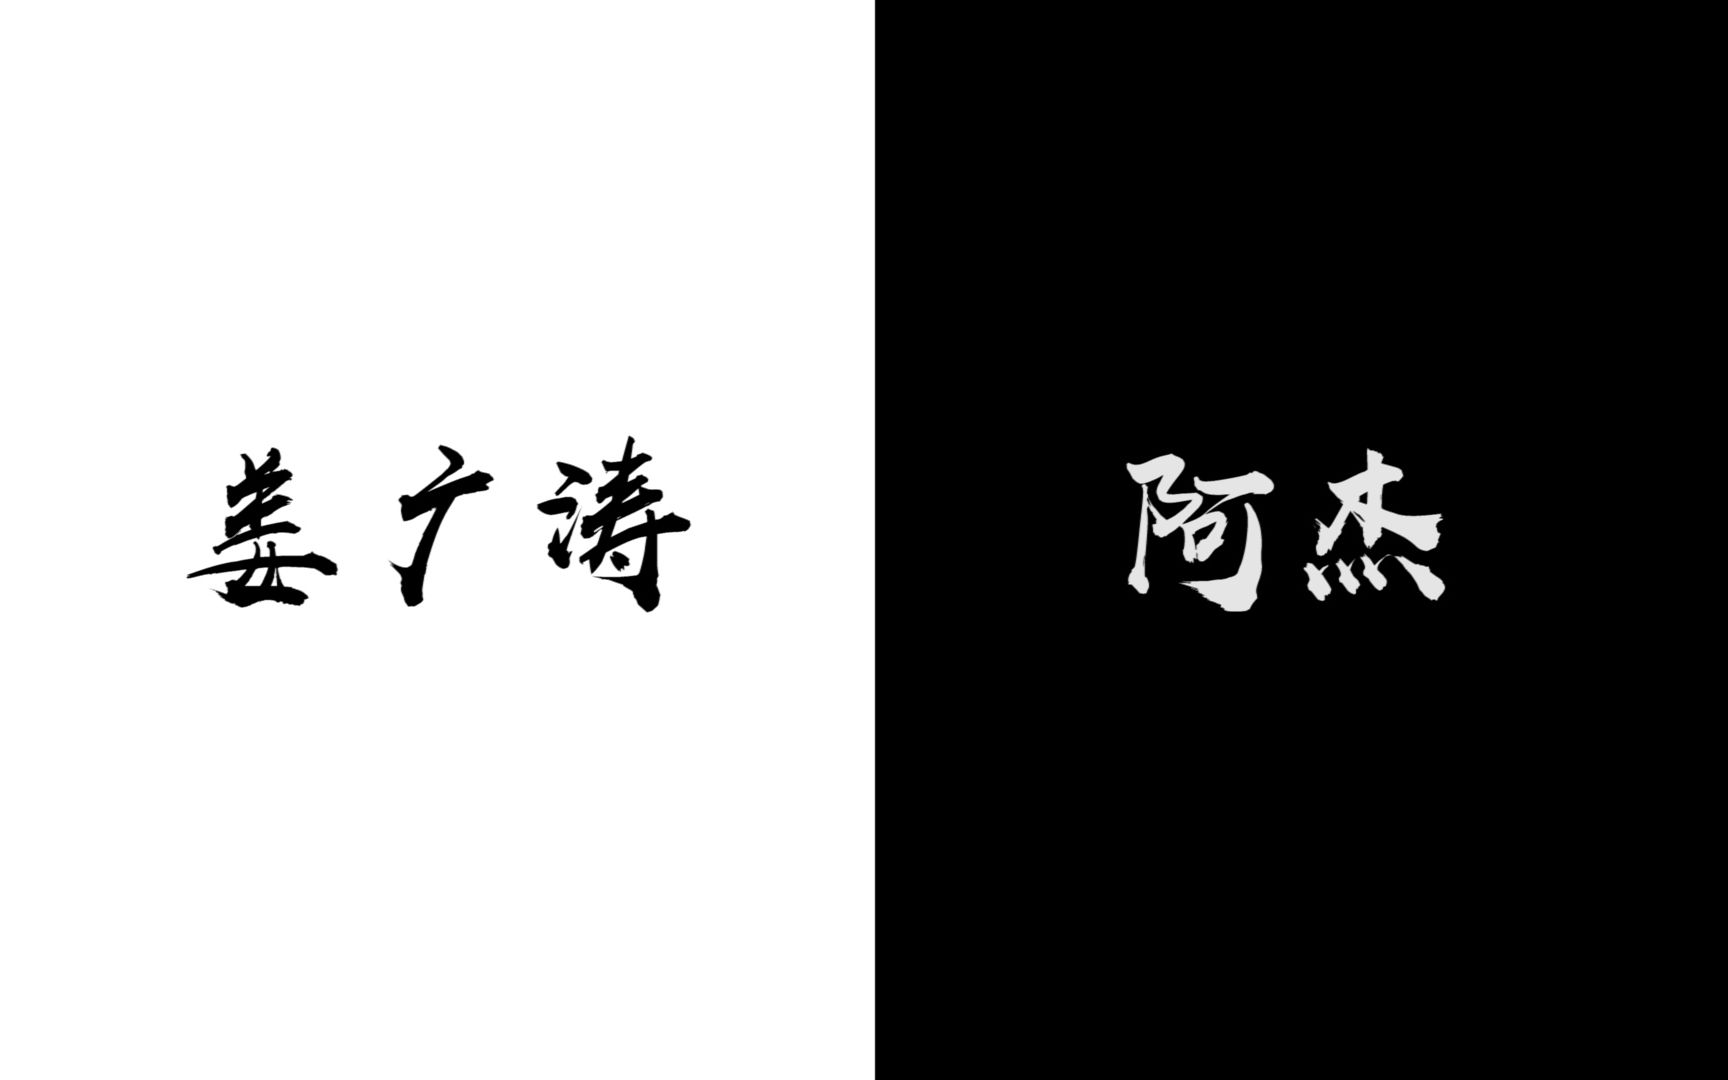 【双声道|六爻·严争鸣】姜sir和阿杰对严争鸣的不同诠释(*^▽^*)